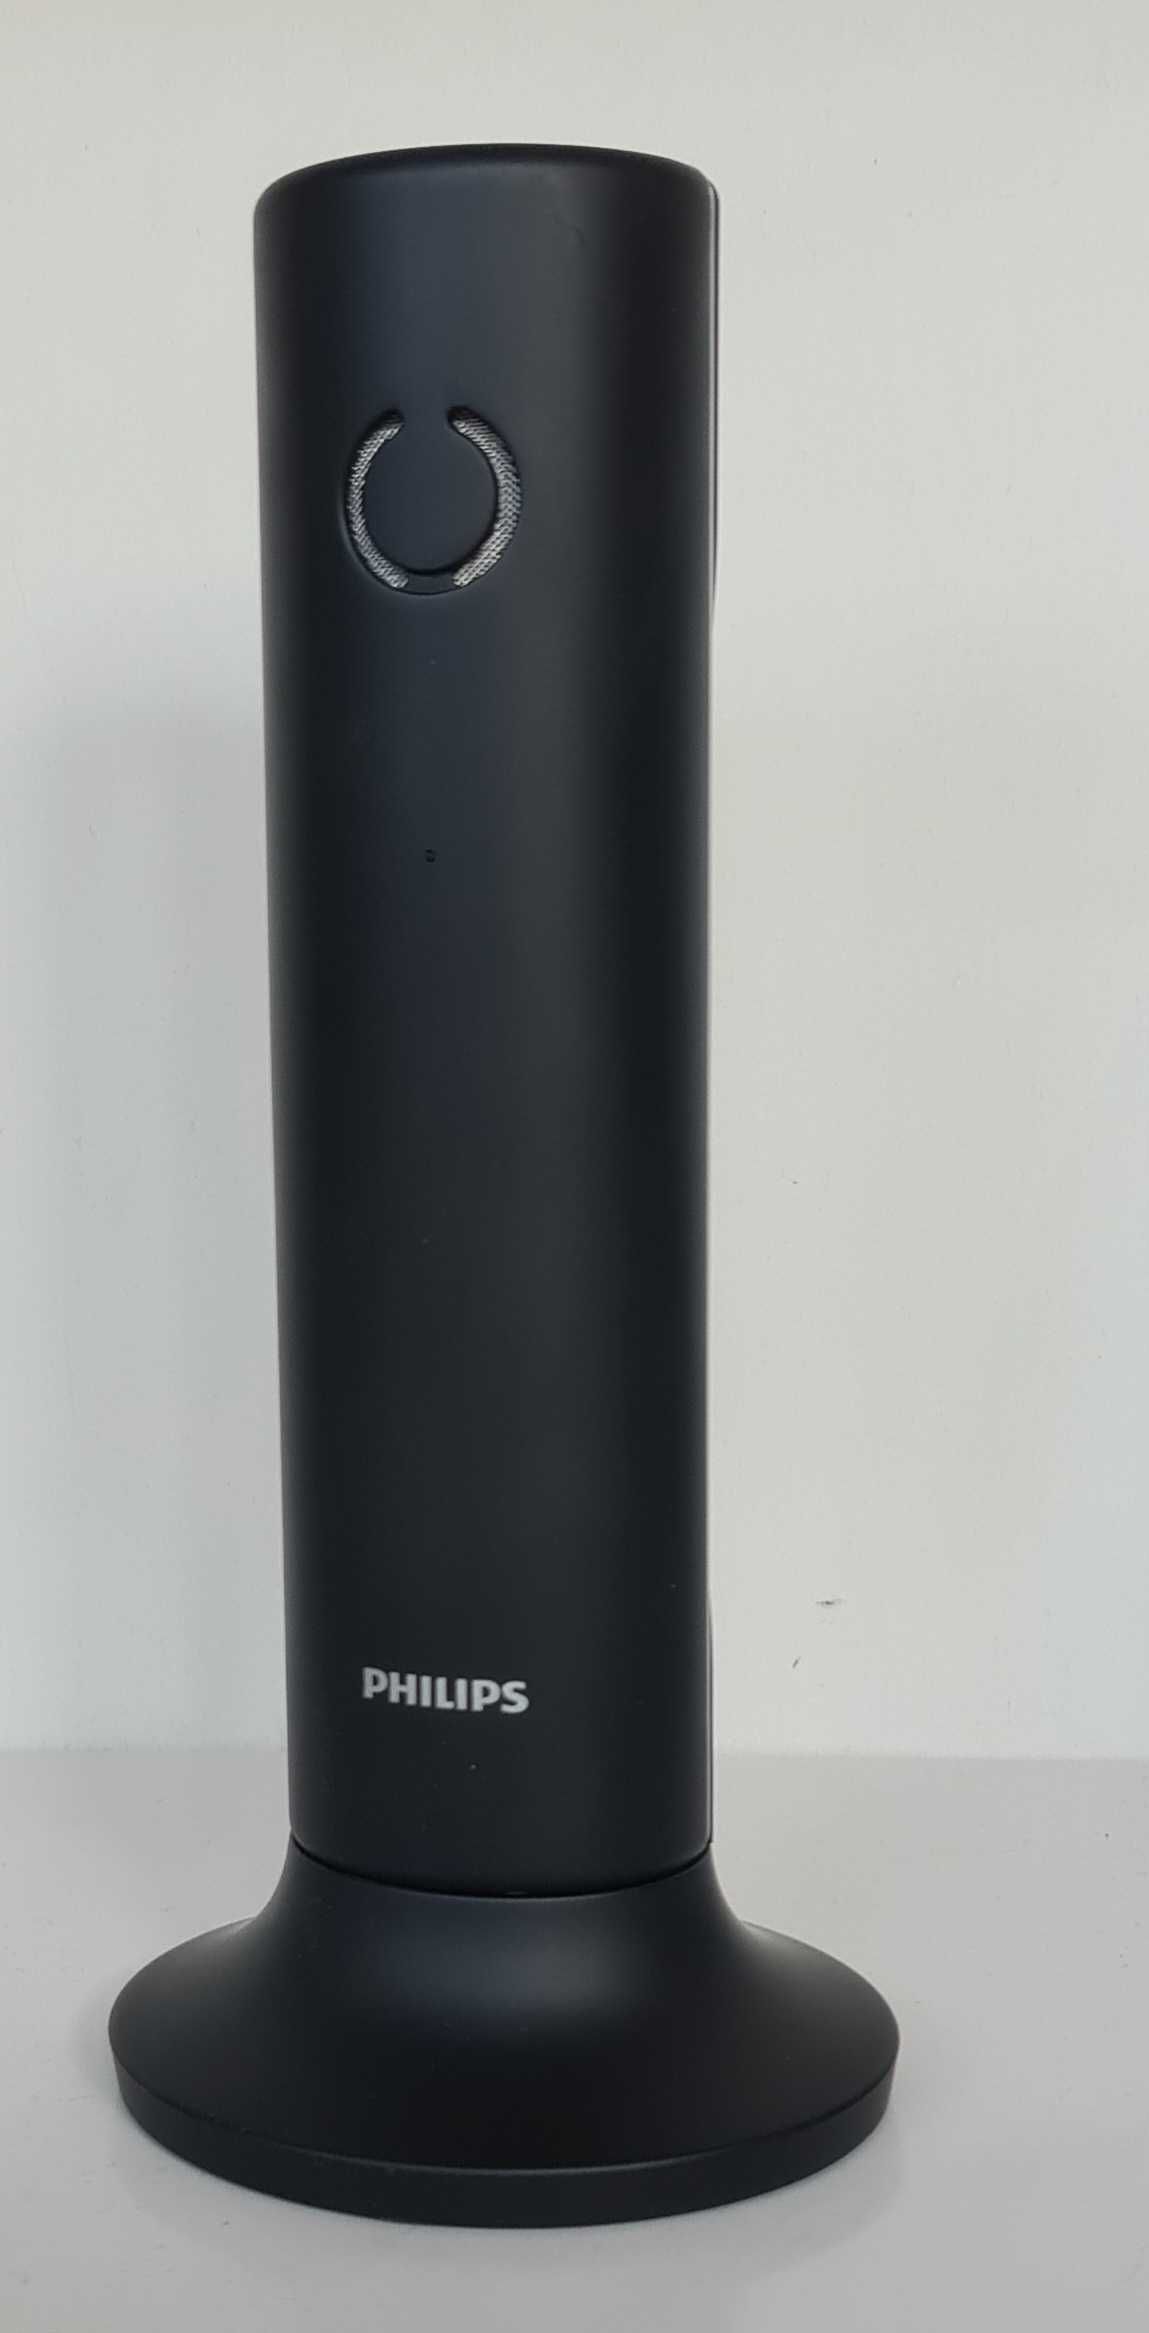 Telefon Bezprzewodowy stacjonarny Philips Linea designerski